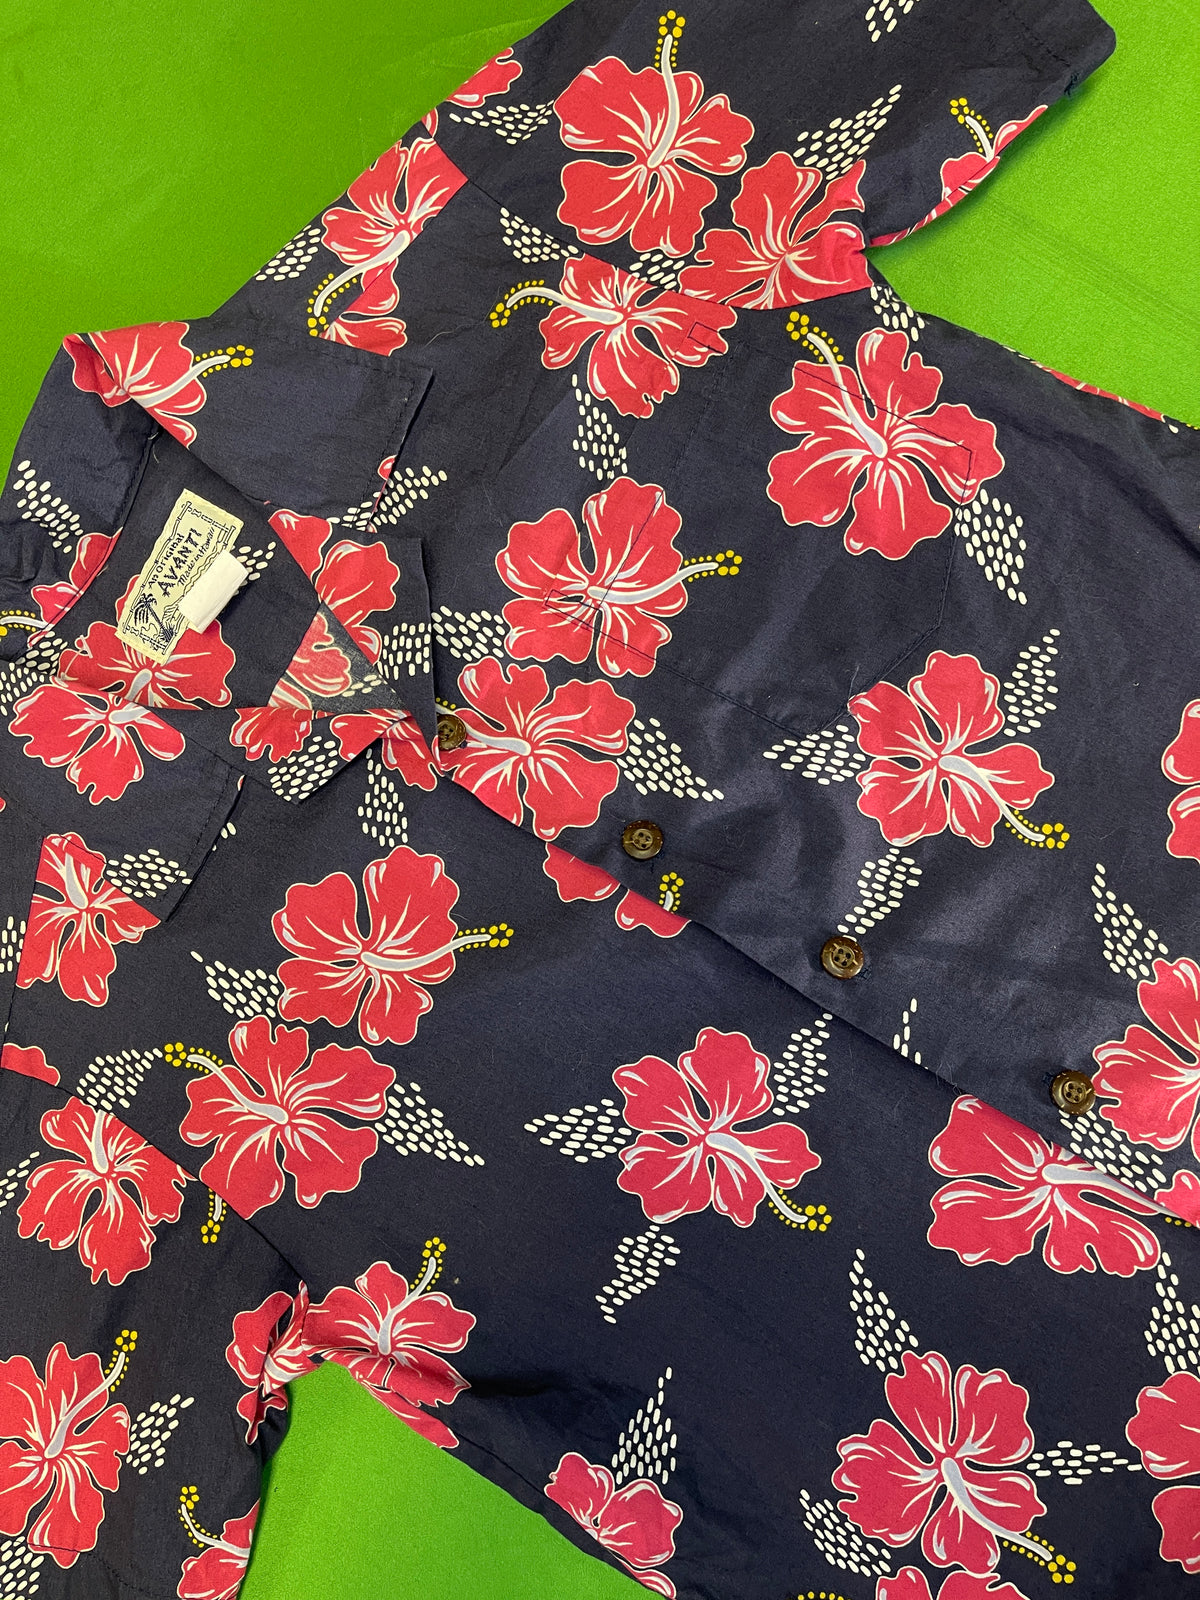 Made in Hawaii Blue & Pink Floral Hawaiian Aloha Shirt Youth Medium 10-12